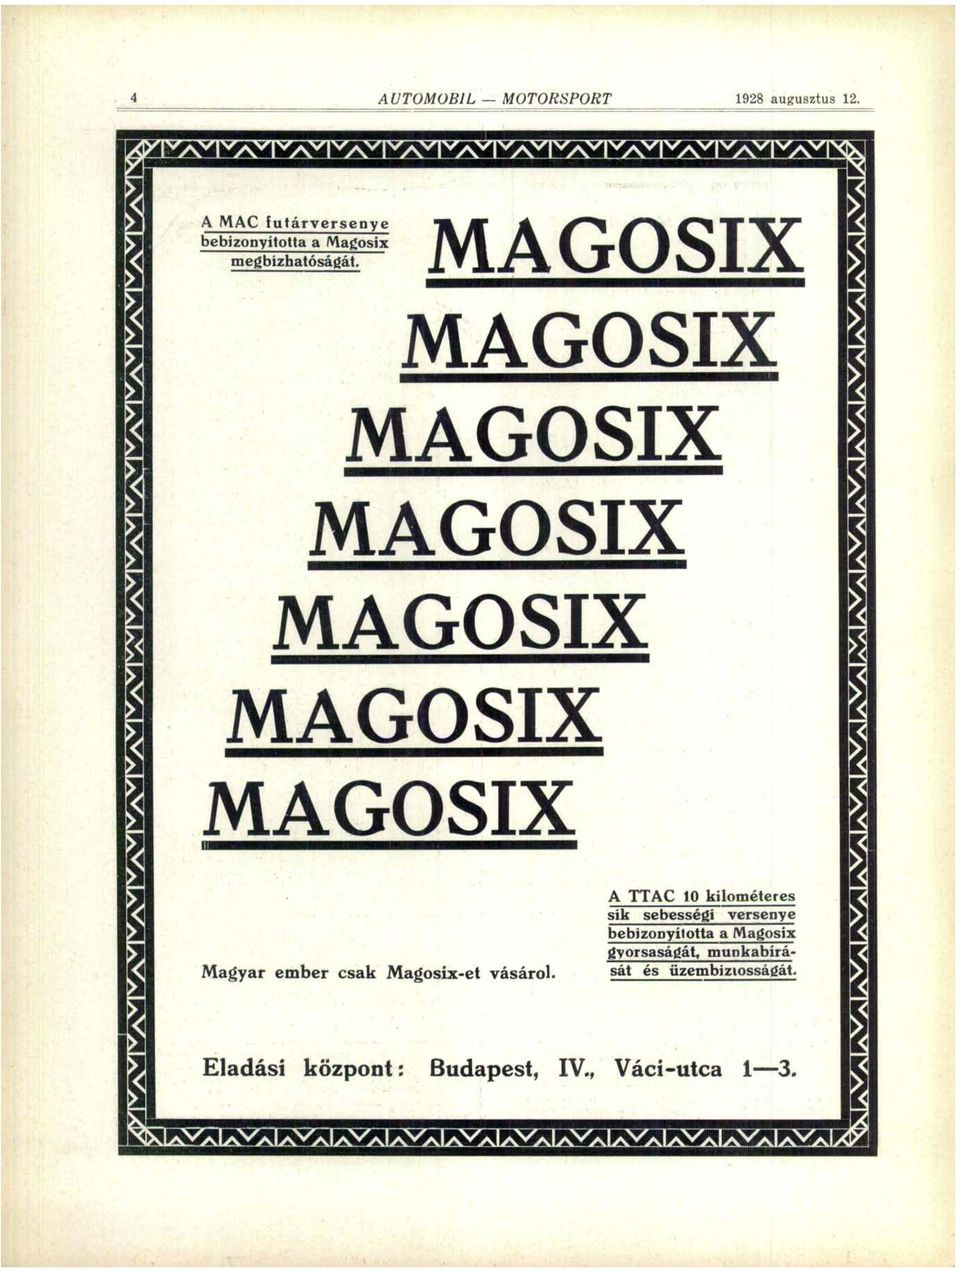 MAGOSIX MAGOSIX MAGOSIX MAGOSIX Hj 1 MAGOSIX MAGOSIX MAGOSIX Magyar ember csak Magosix-et